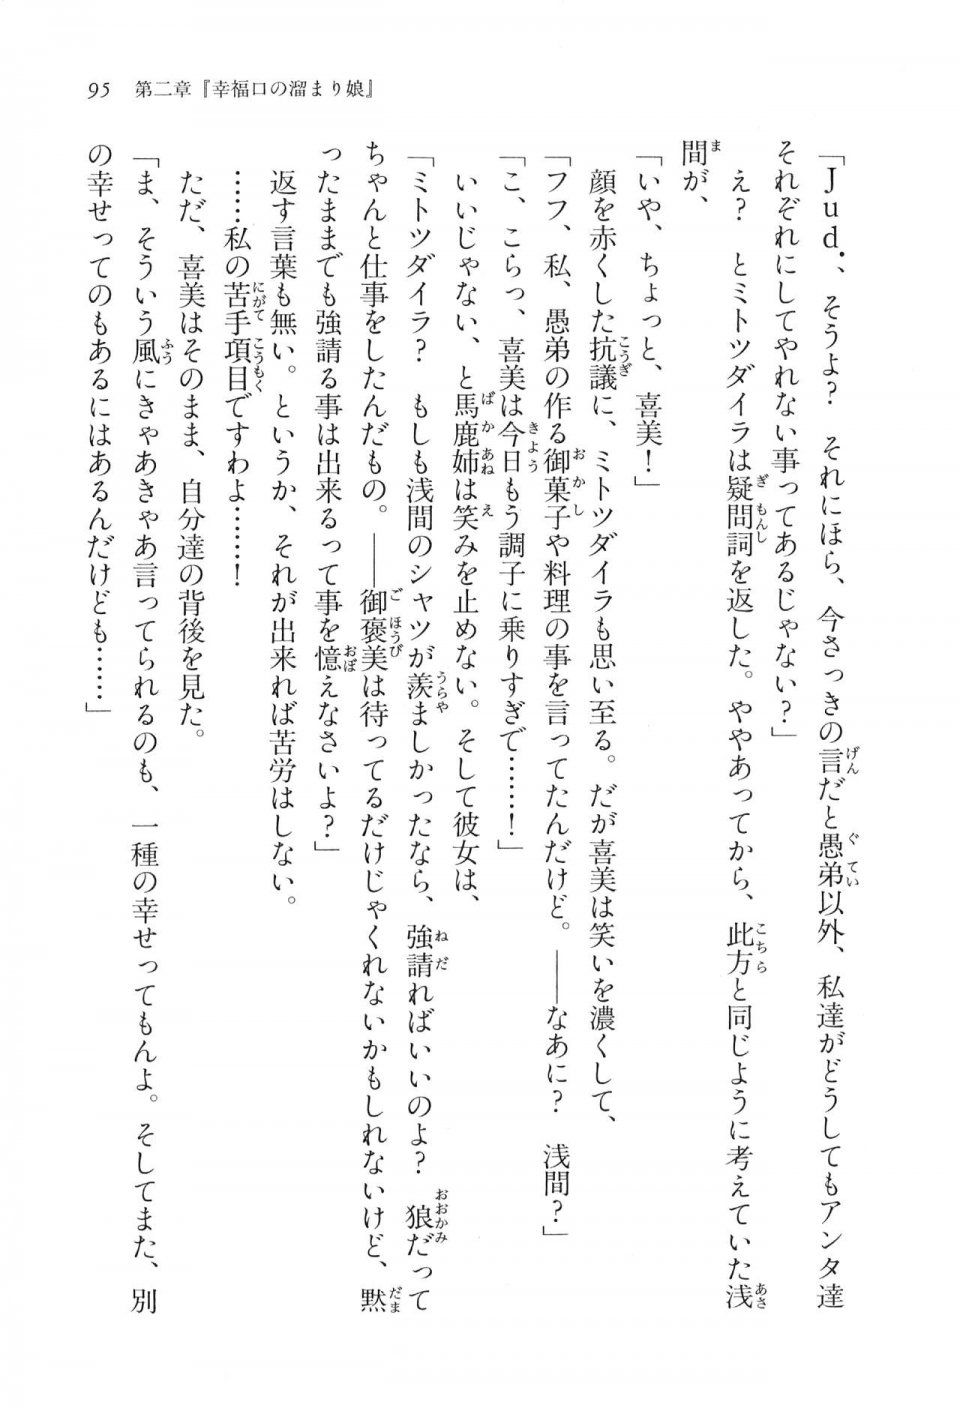 Kyoukai Senjou no Horizon LN Vol 16(7A) - Photo #95